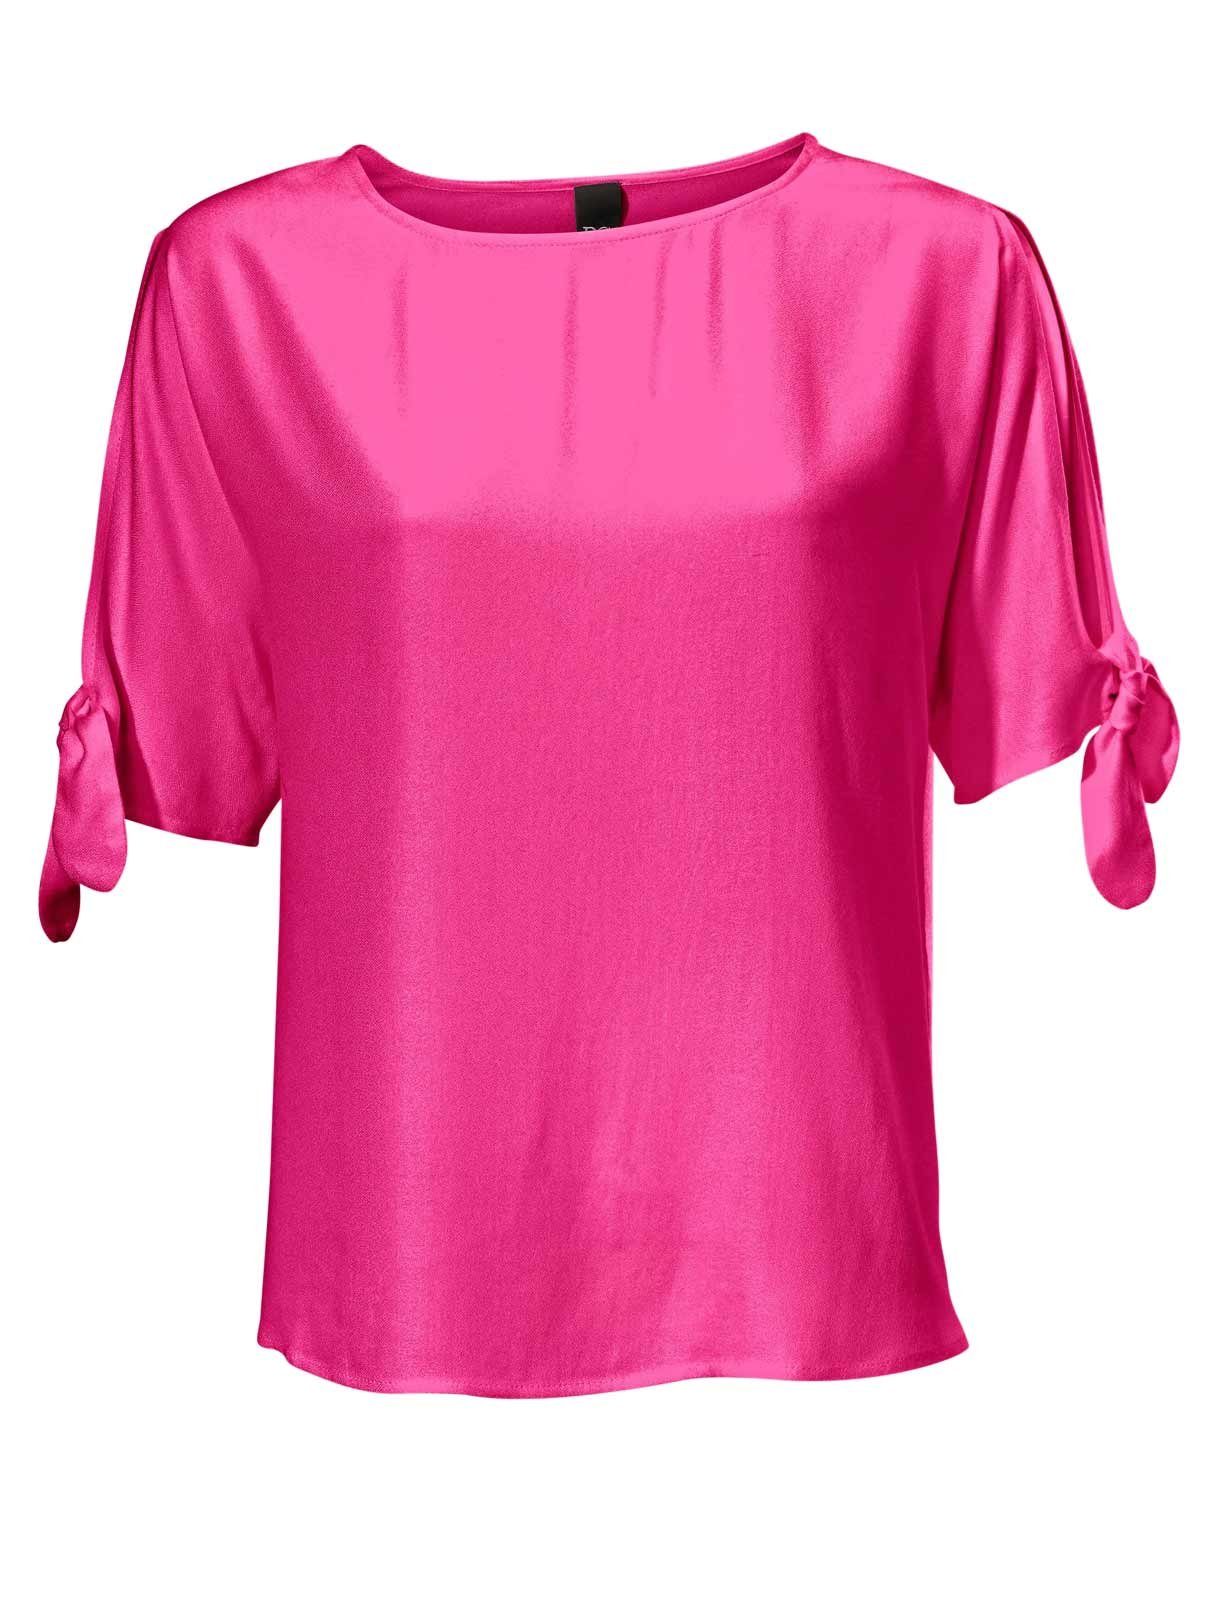 Heine Shirtbluse Heine Damen Bluse, pink online kaufen | OTTO